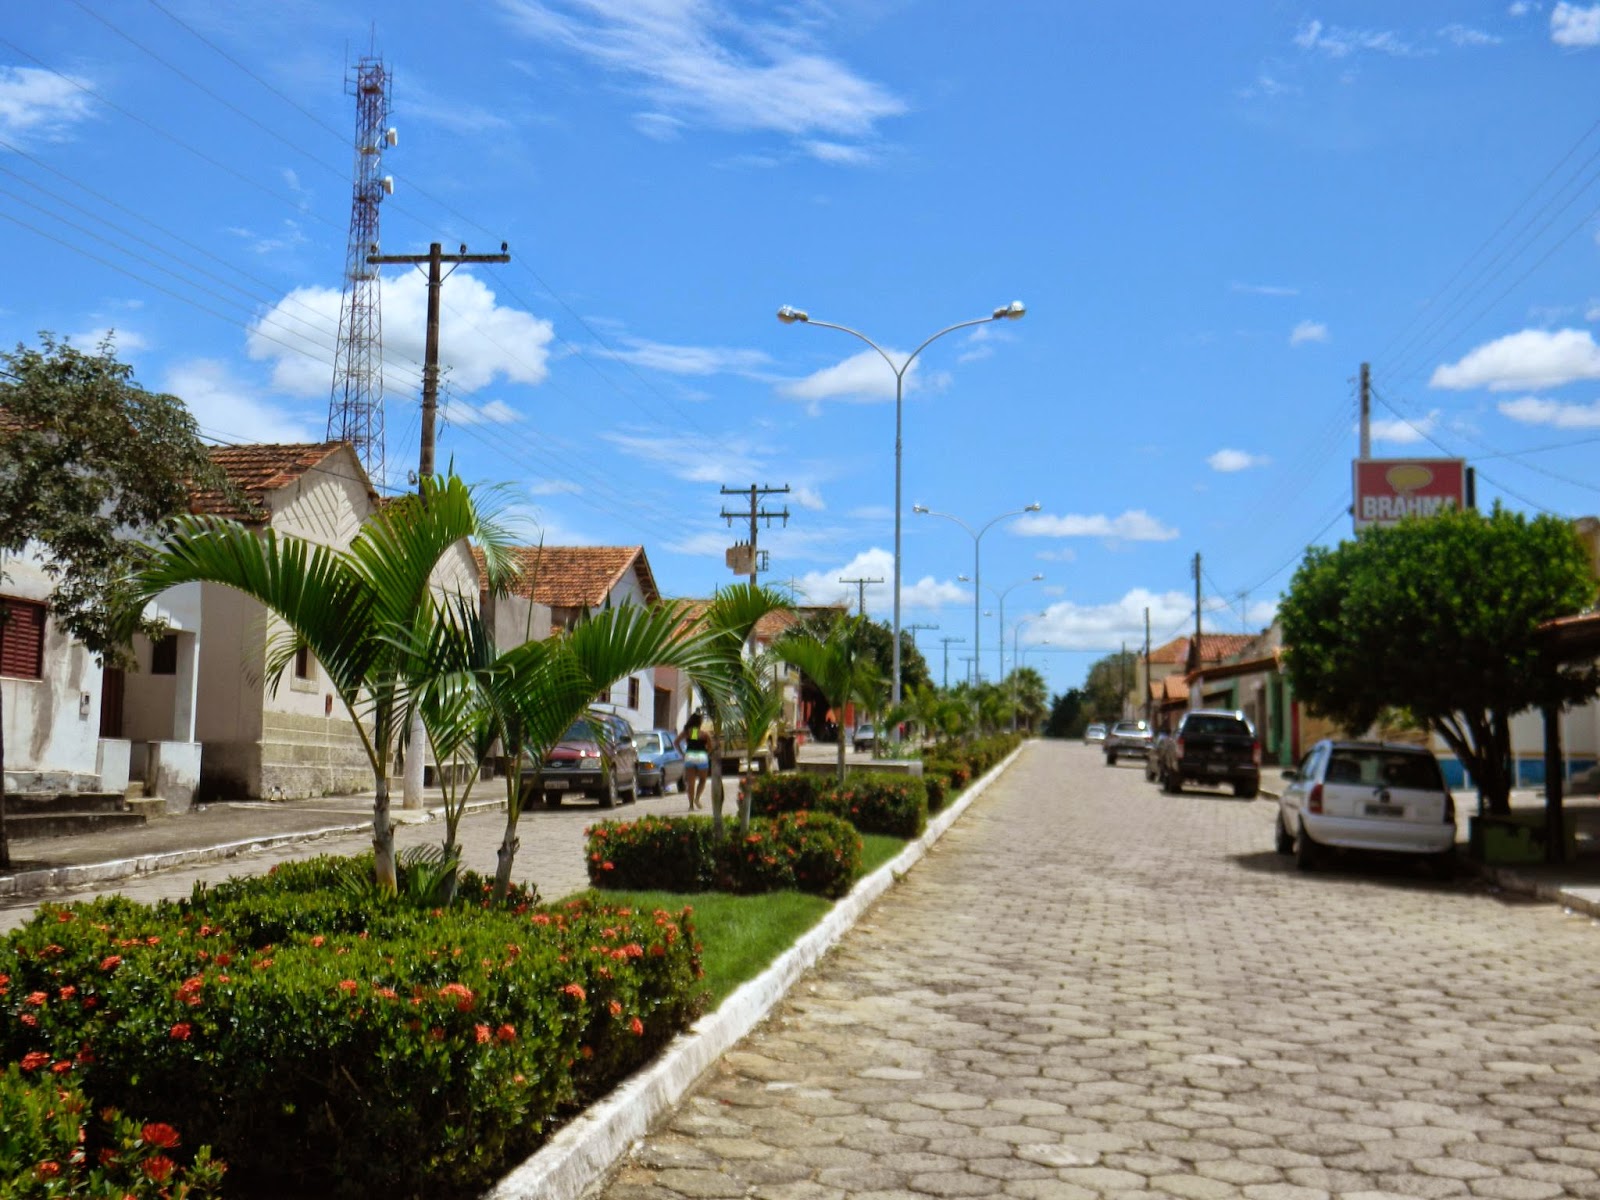 Avenida principal de Anhanguera. (Reprodução/Blog Uai Meu!)